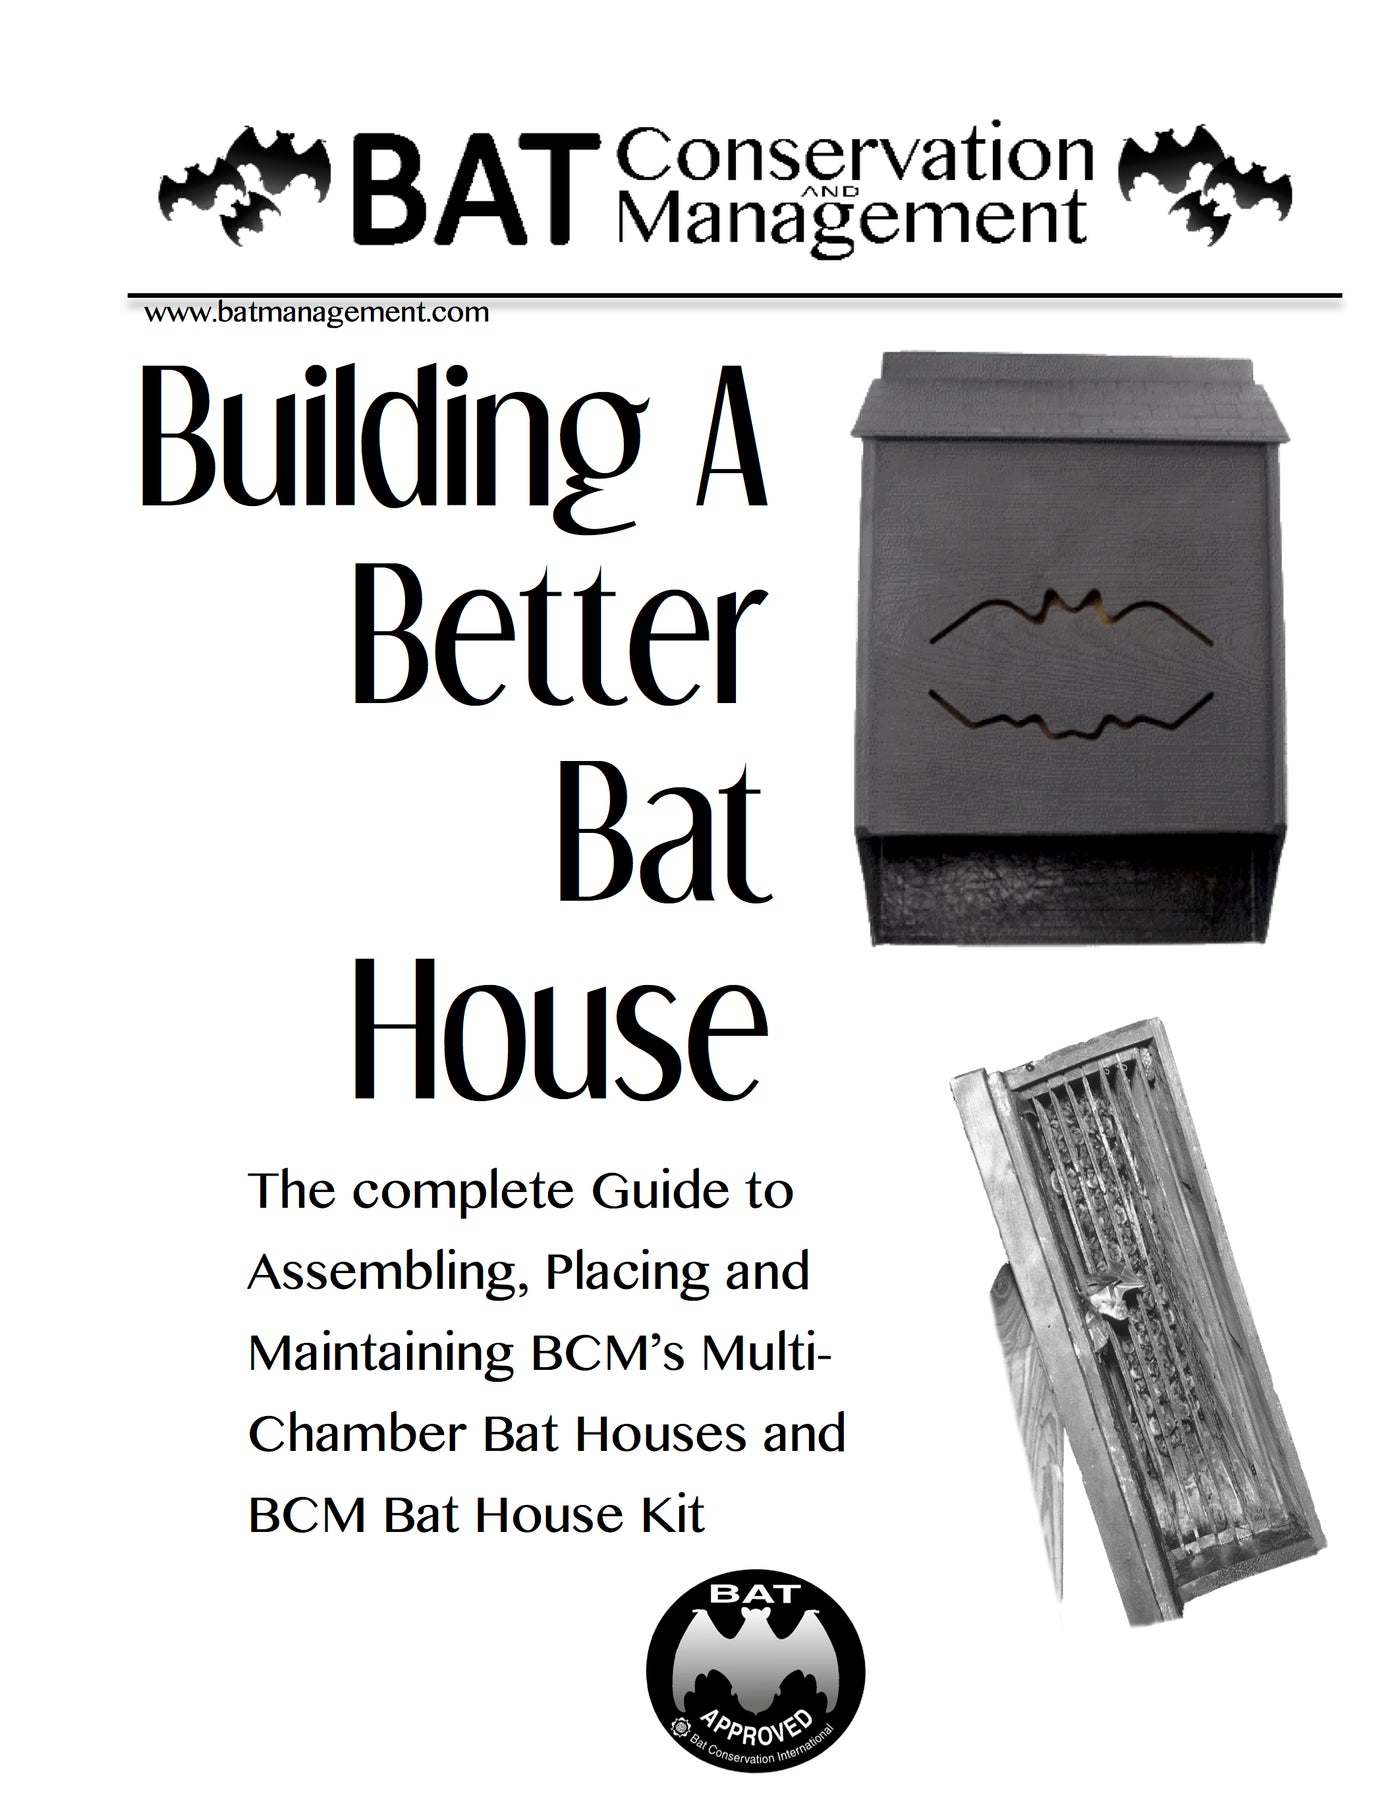 BCM Bat House Plans – Bat Conservation and Management, Inc.